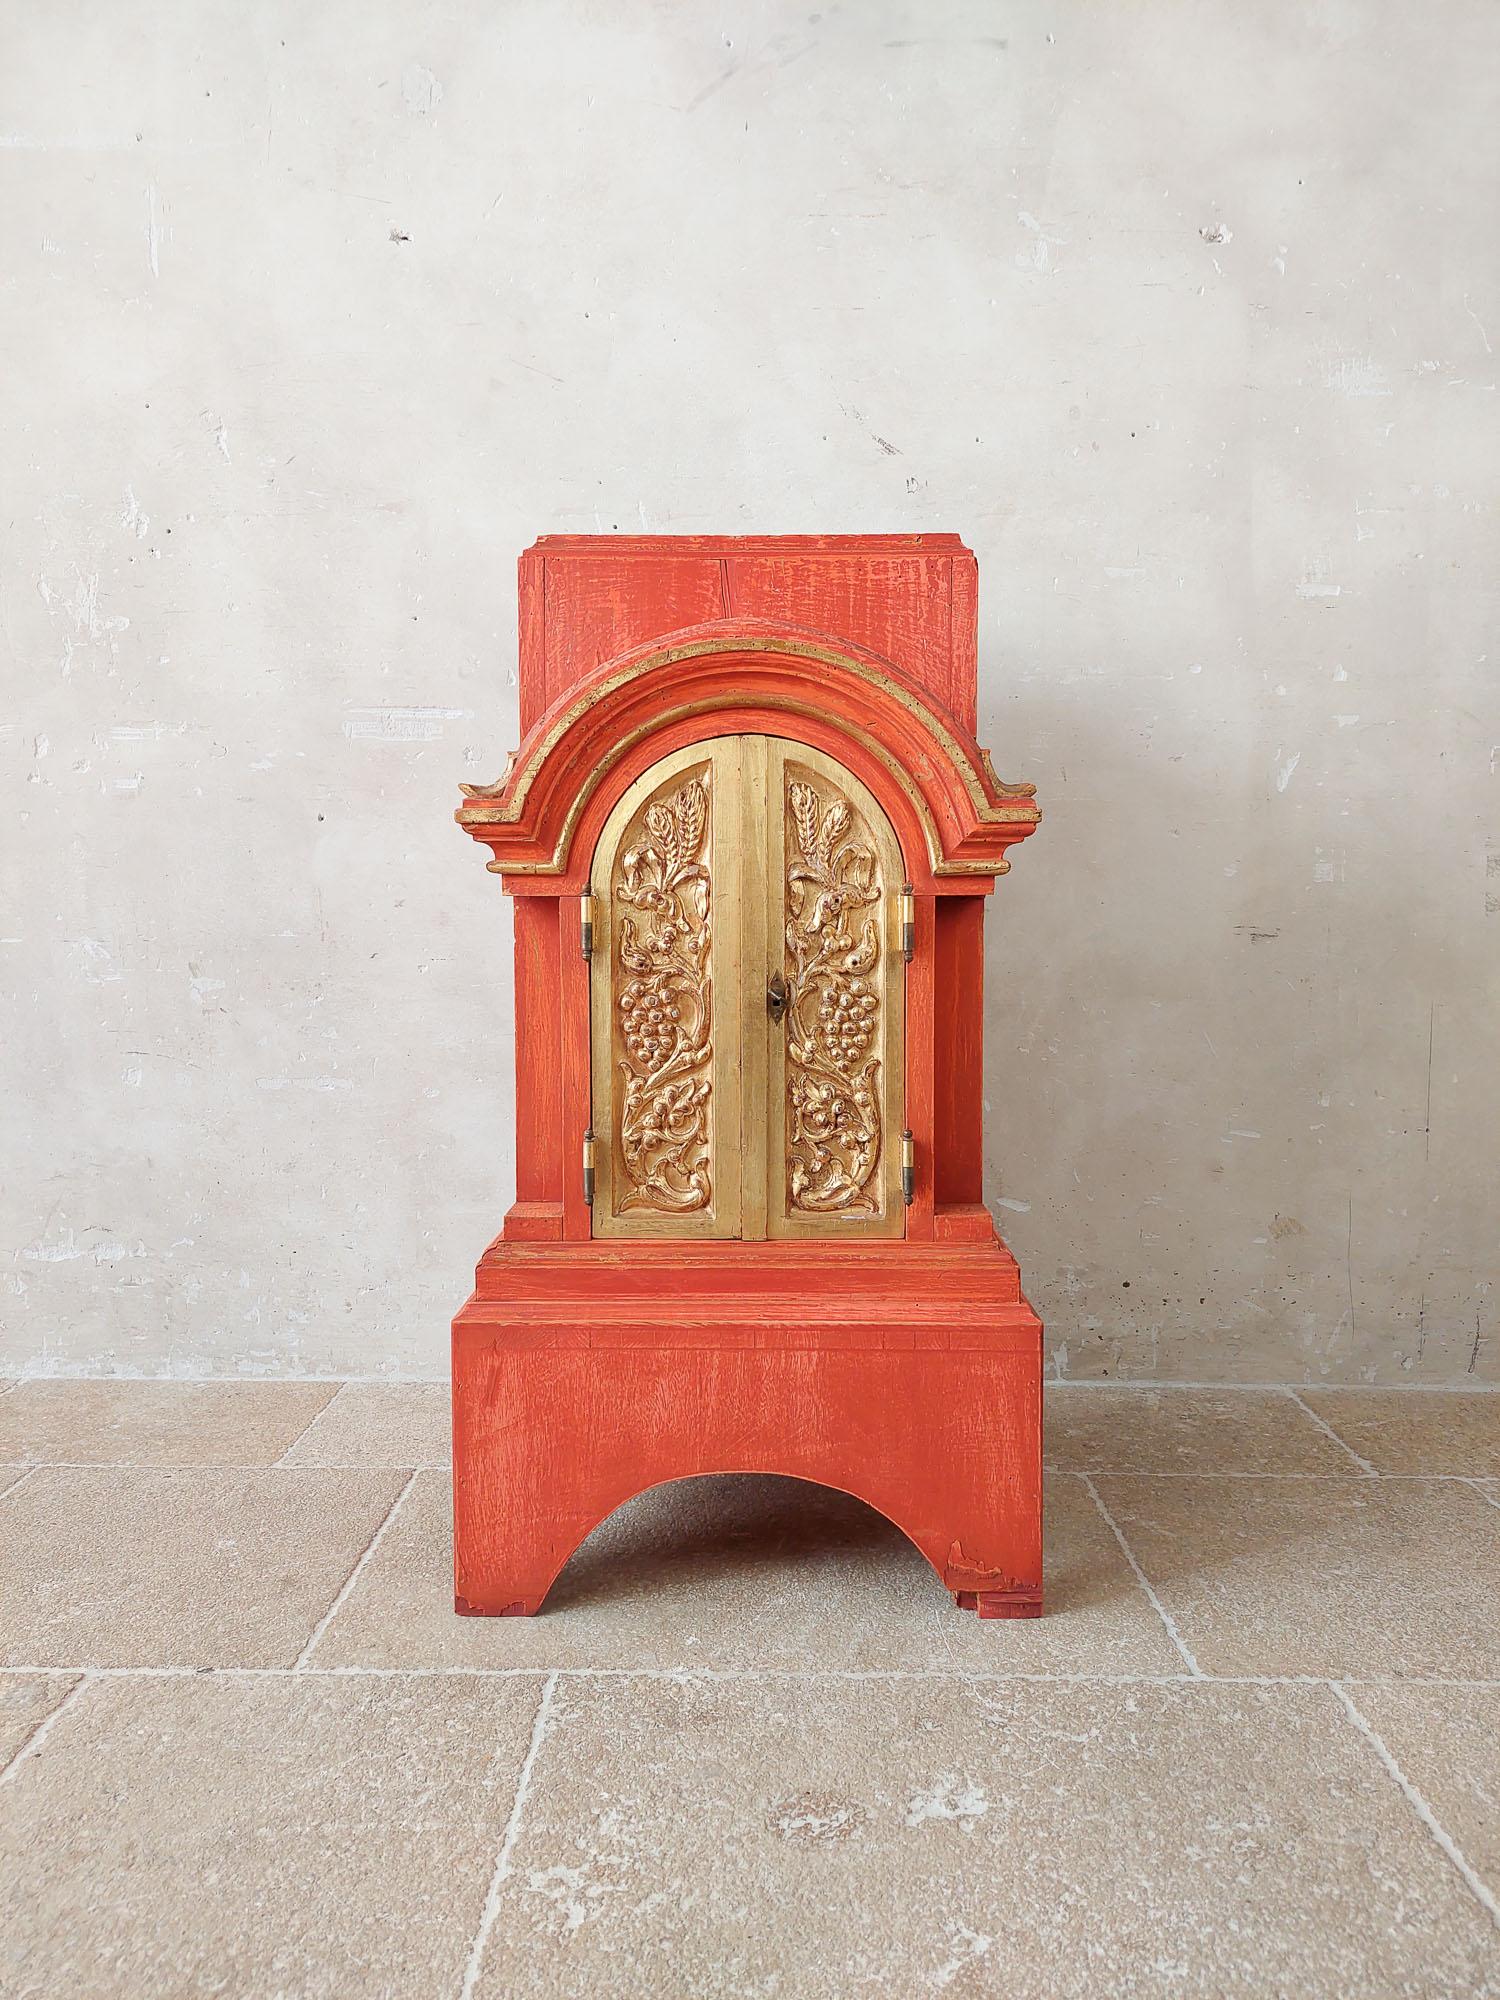 Autel de table ou tabernacle ancien, patiné en couleur terra orange avec des portes dorées.

h 95 x l 50 x p 47 cm